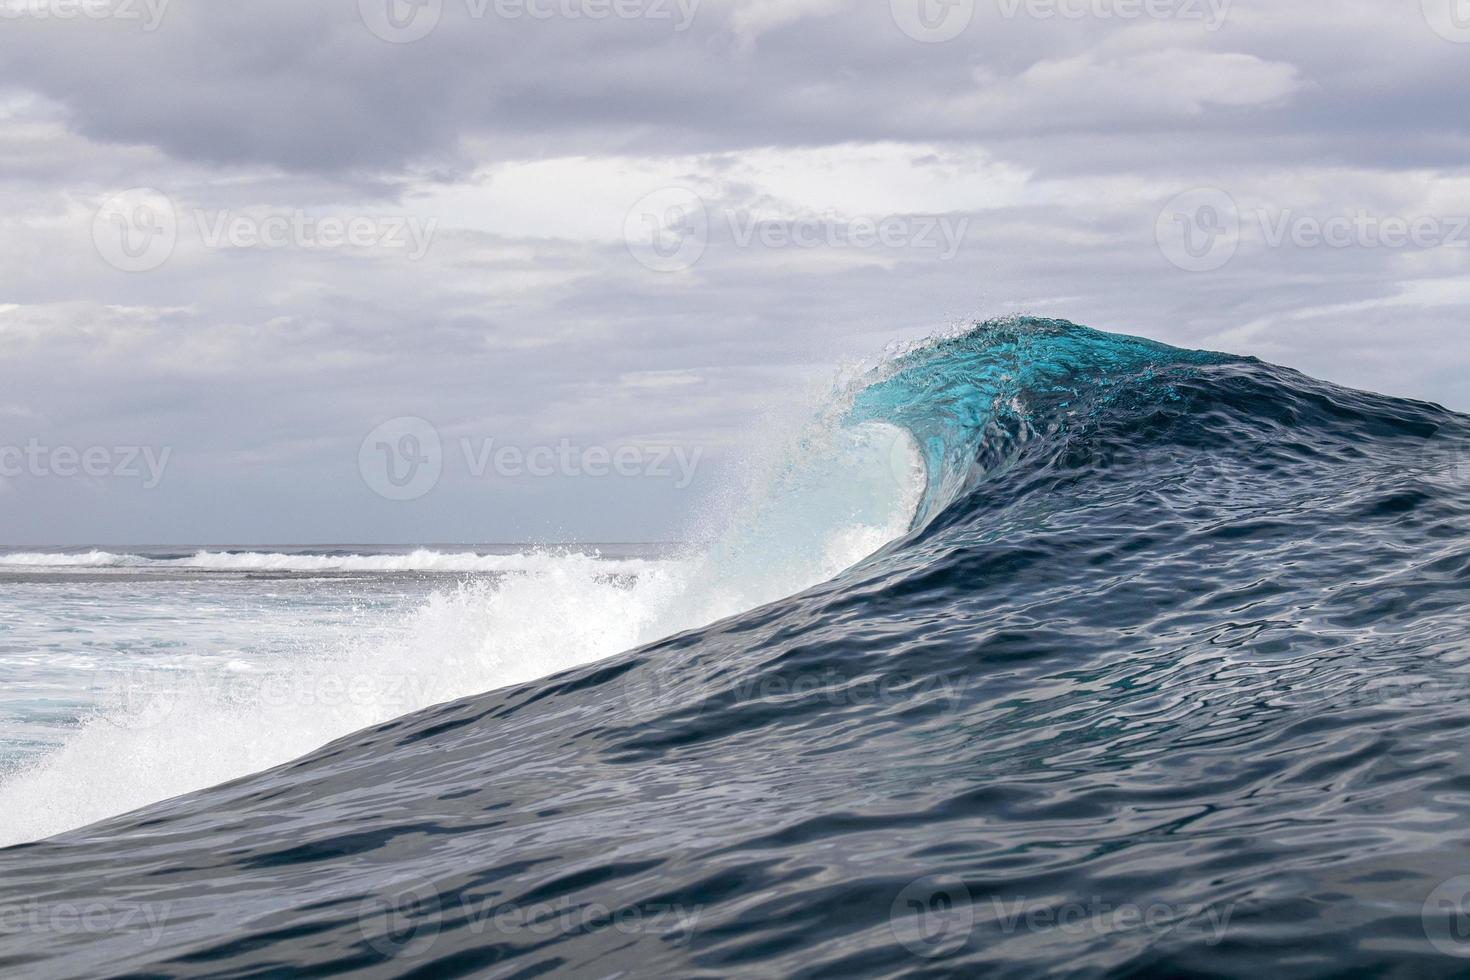 detalhe do tubo de ondas de surf no oceano pacífico polinésia francesa tahiti foto